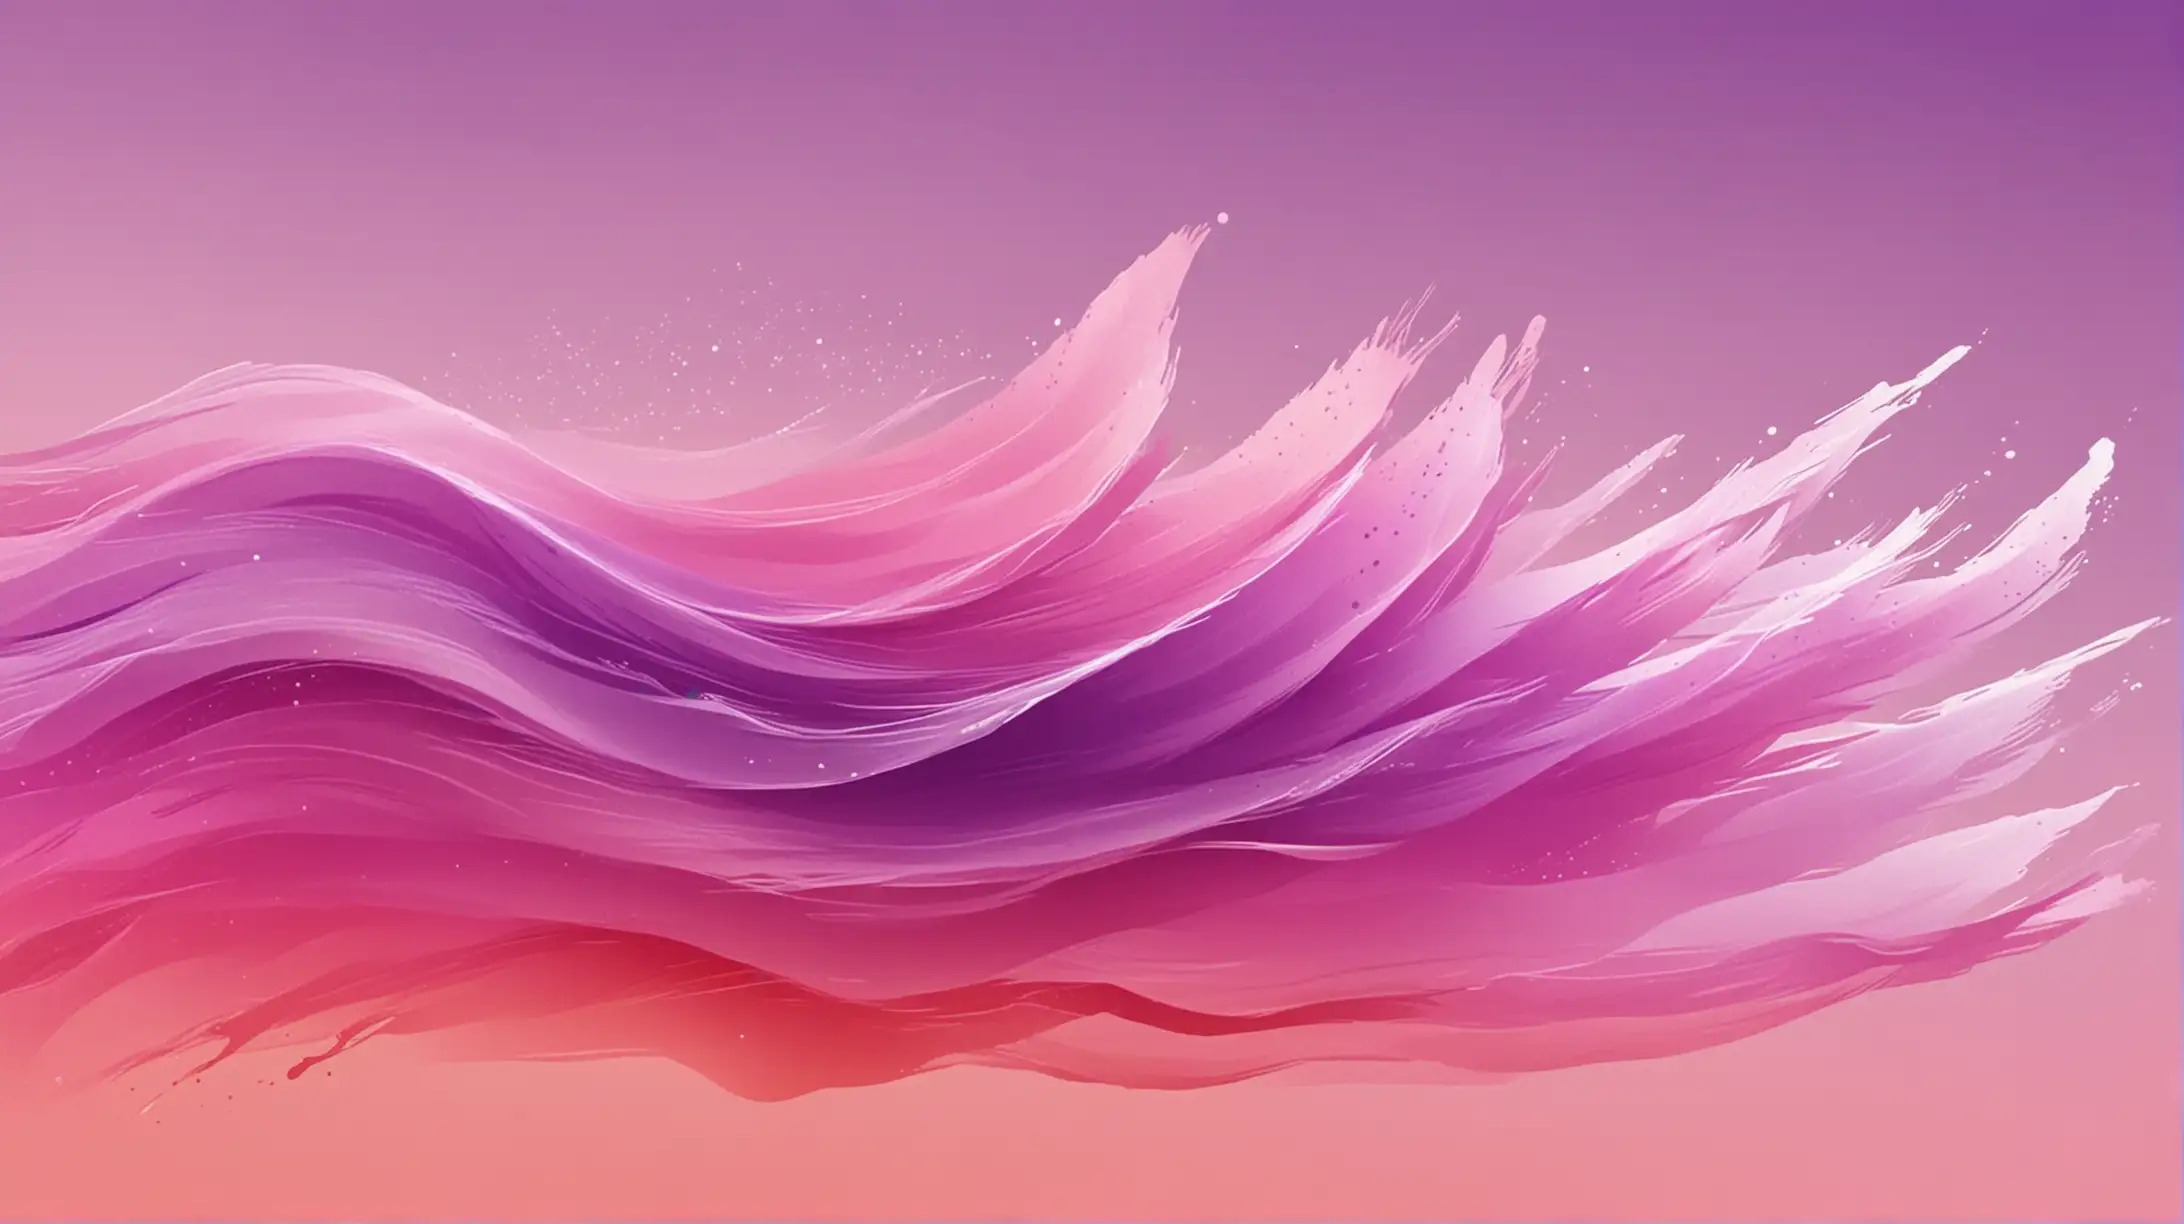  水粉 风吹 运动 风吹 风  充满活力 紫色渐变 红色渐变 涂抹 风 趋势   高清  玻璃 矢量 水粉 涂抹 纹理 运动 半透明